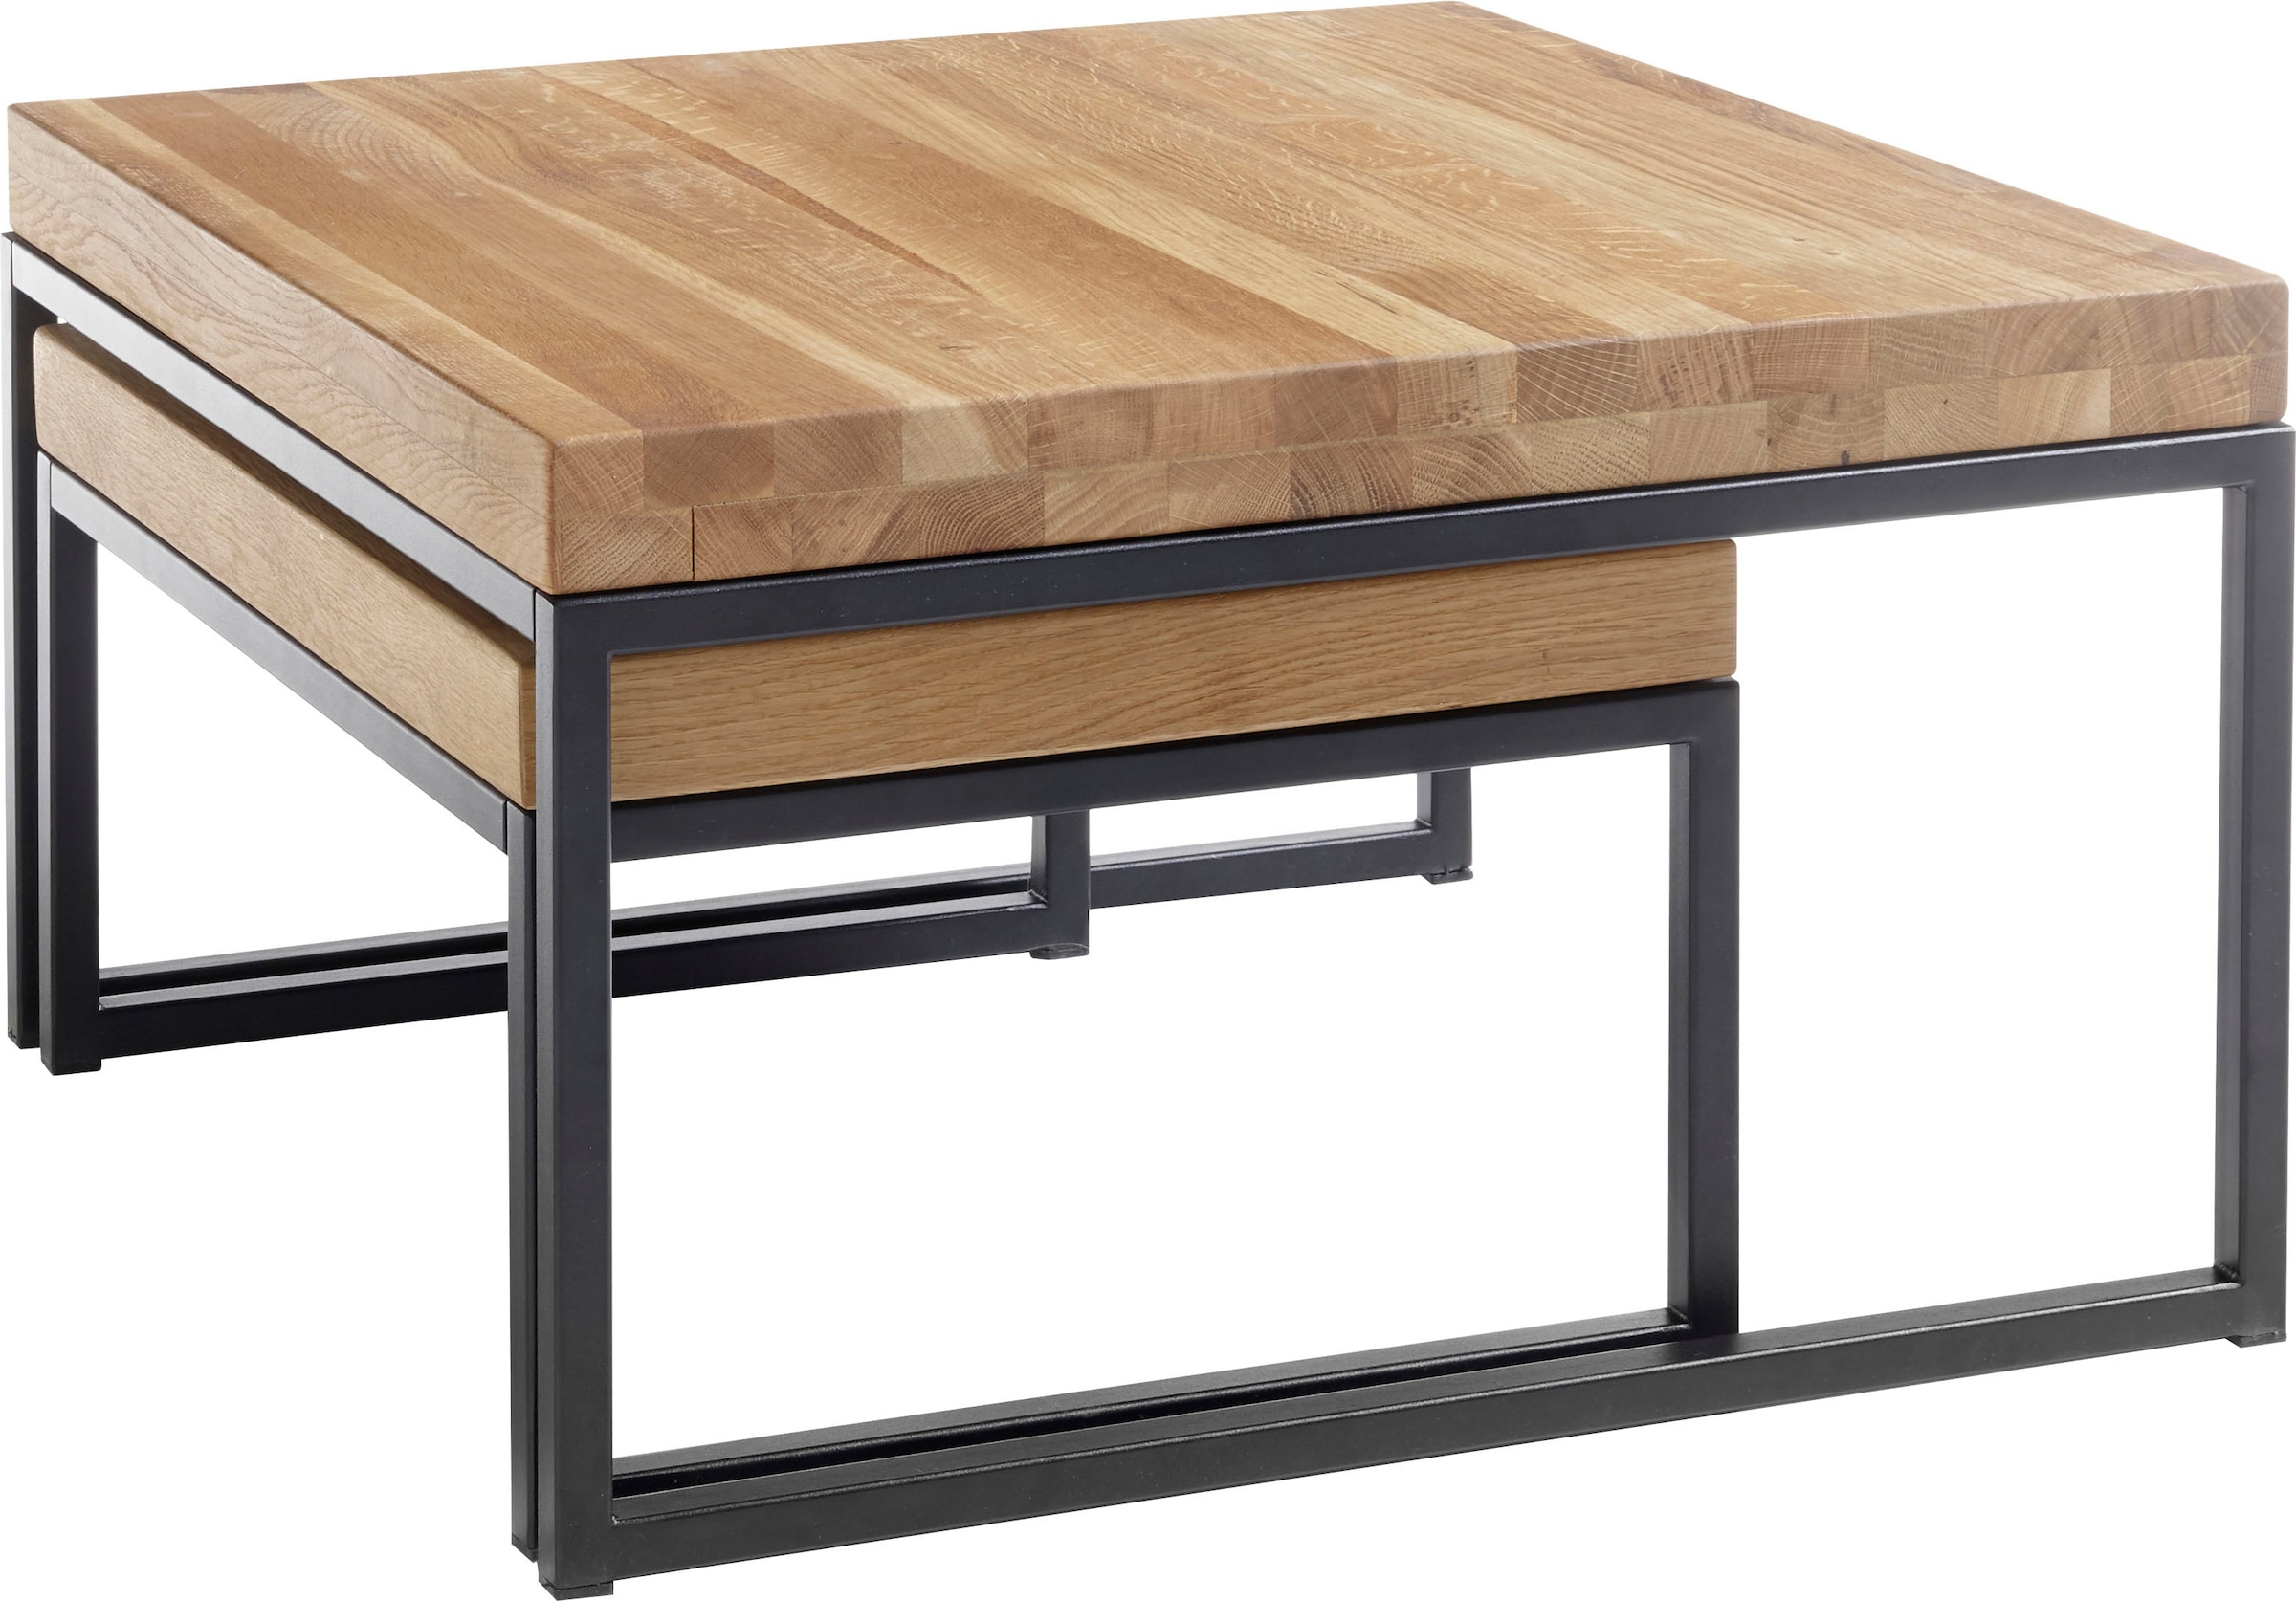 MCA furniture Couchtisch in 2-er Asteiche Set jetzt kaufen Massivholz geölt Wohnzimmertisch »Lubao«